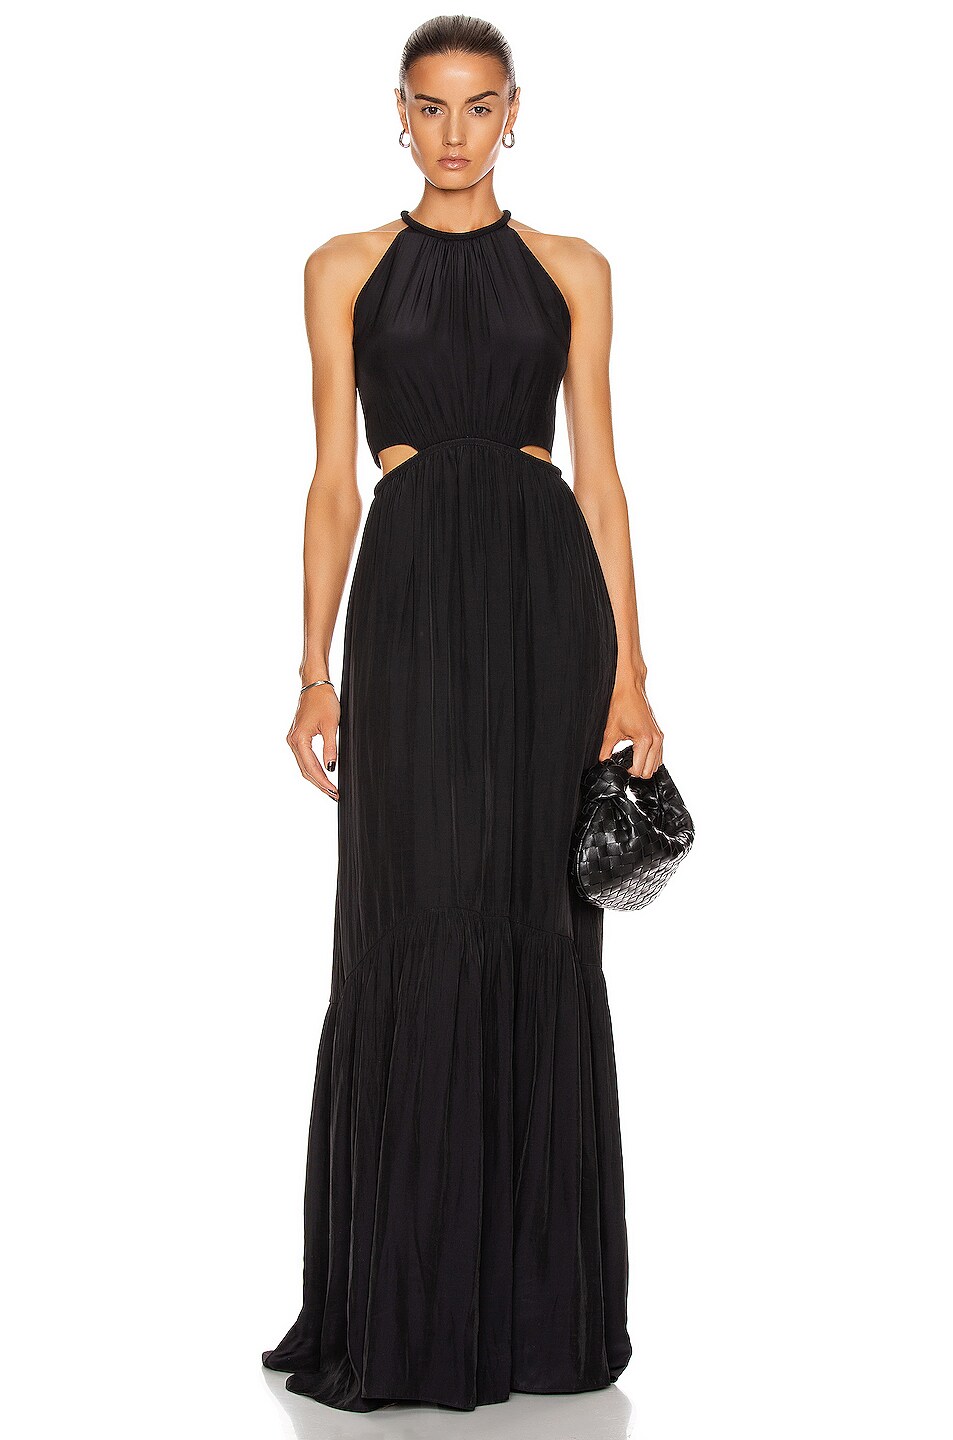 A.L.C. Libra Dress in Black | FWRD